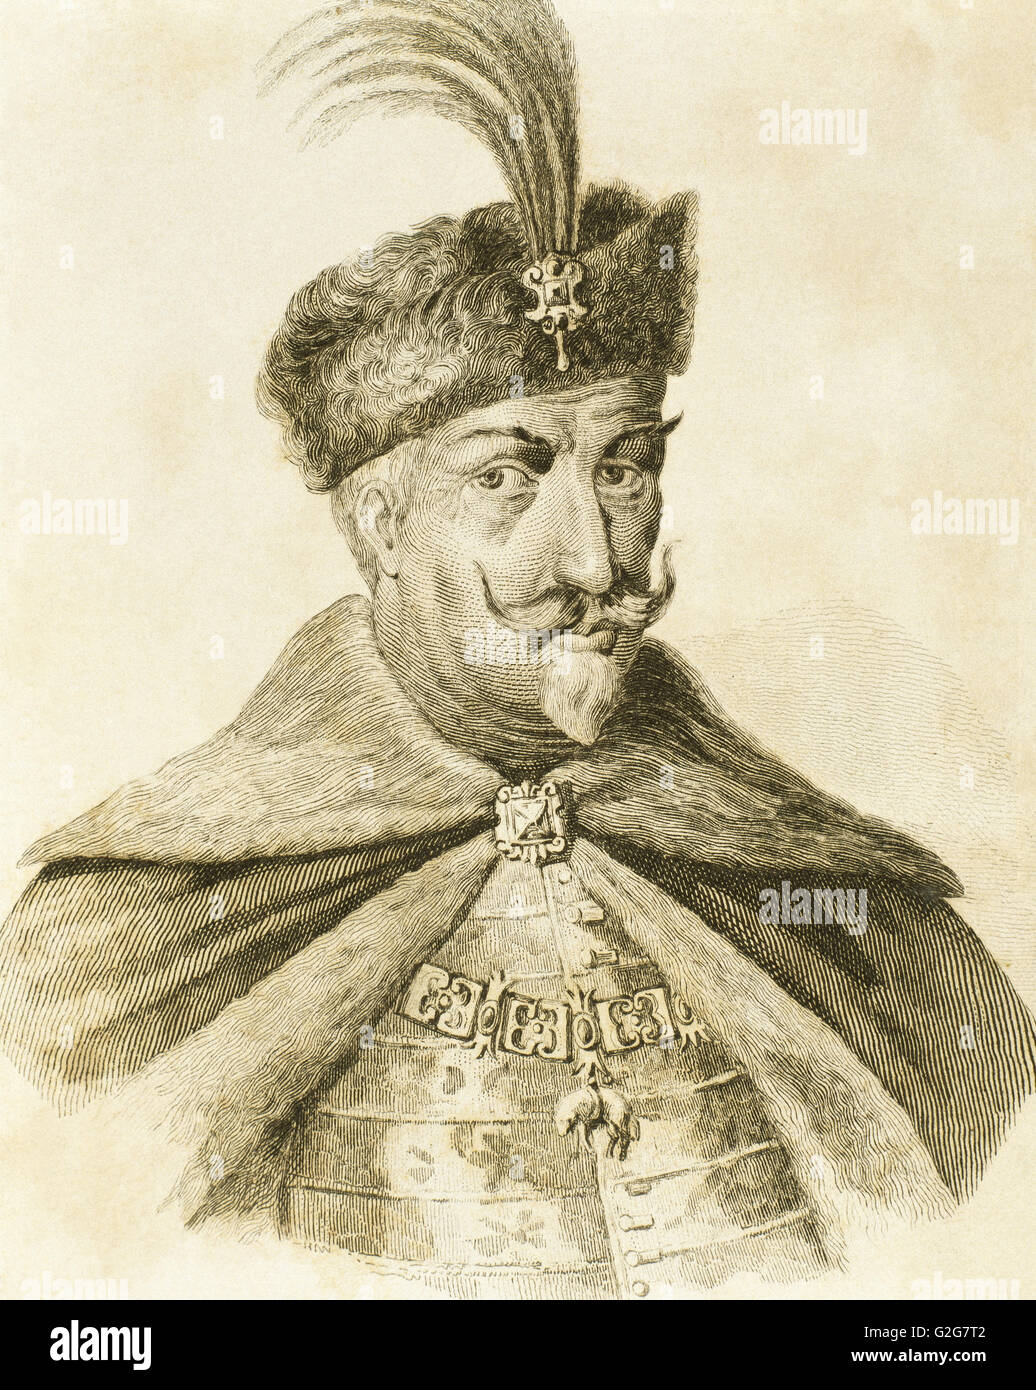 Matthias ich Corvinus (1440-1490). König von Ungarn und Kroatien (1458-1490). Gravur. Stockfoto